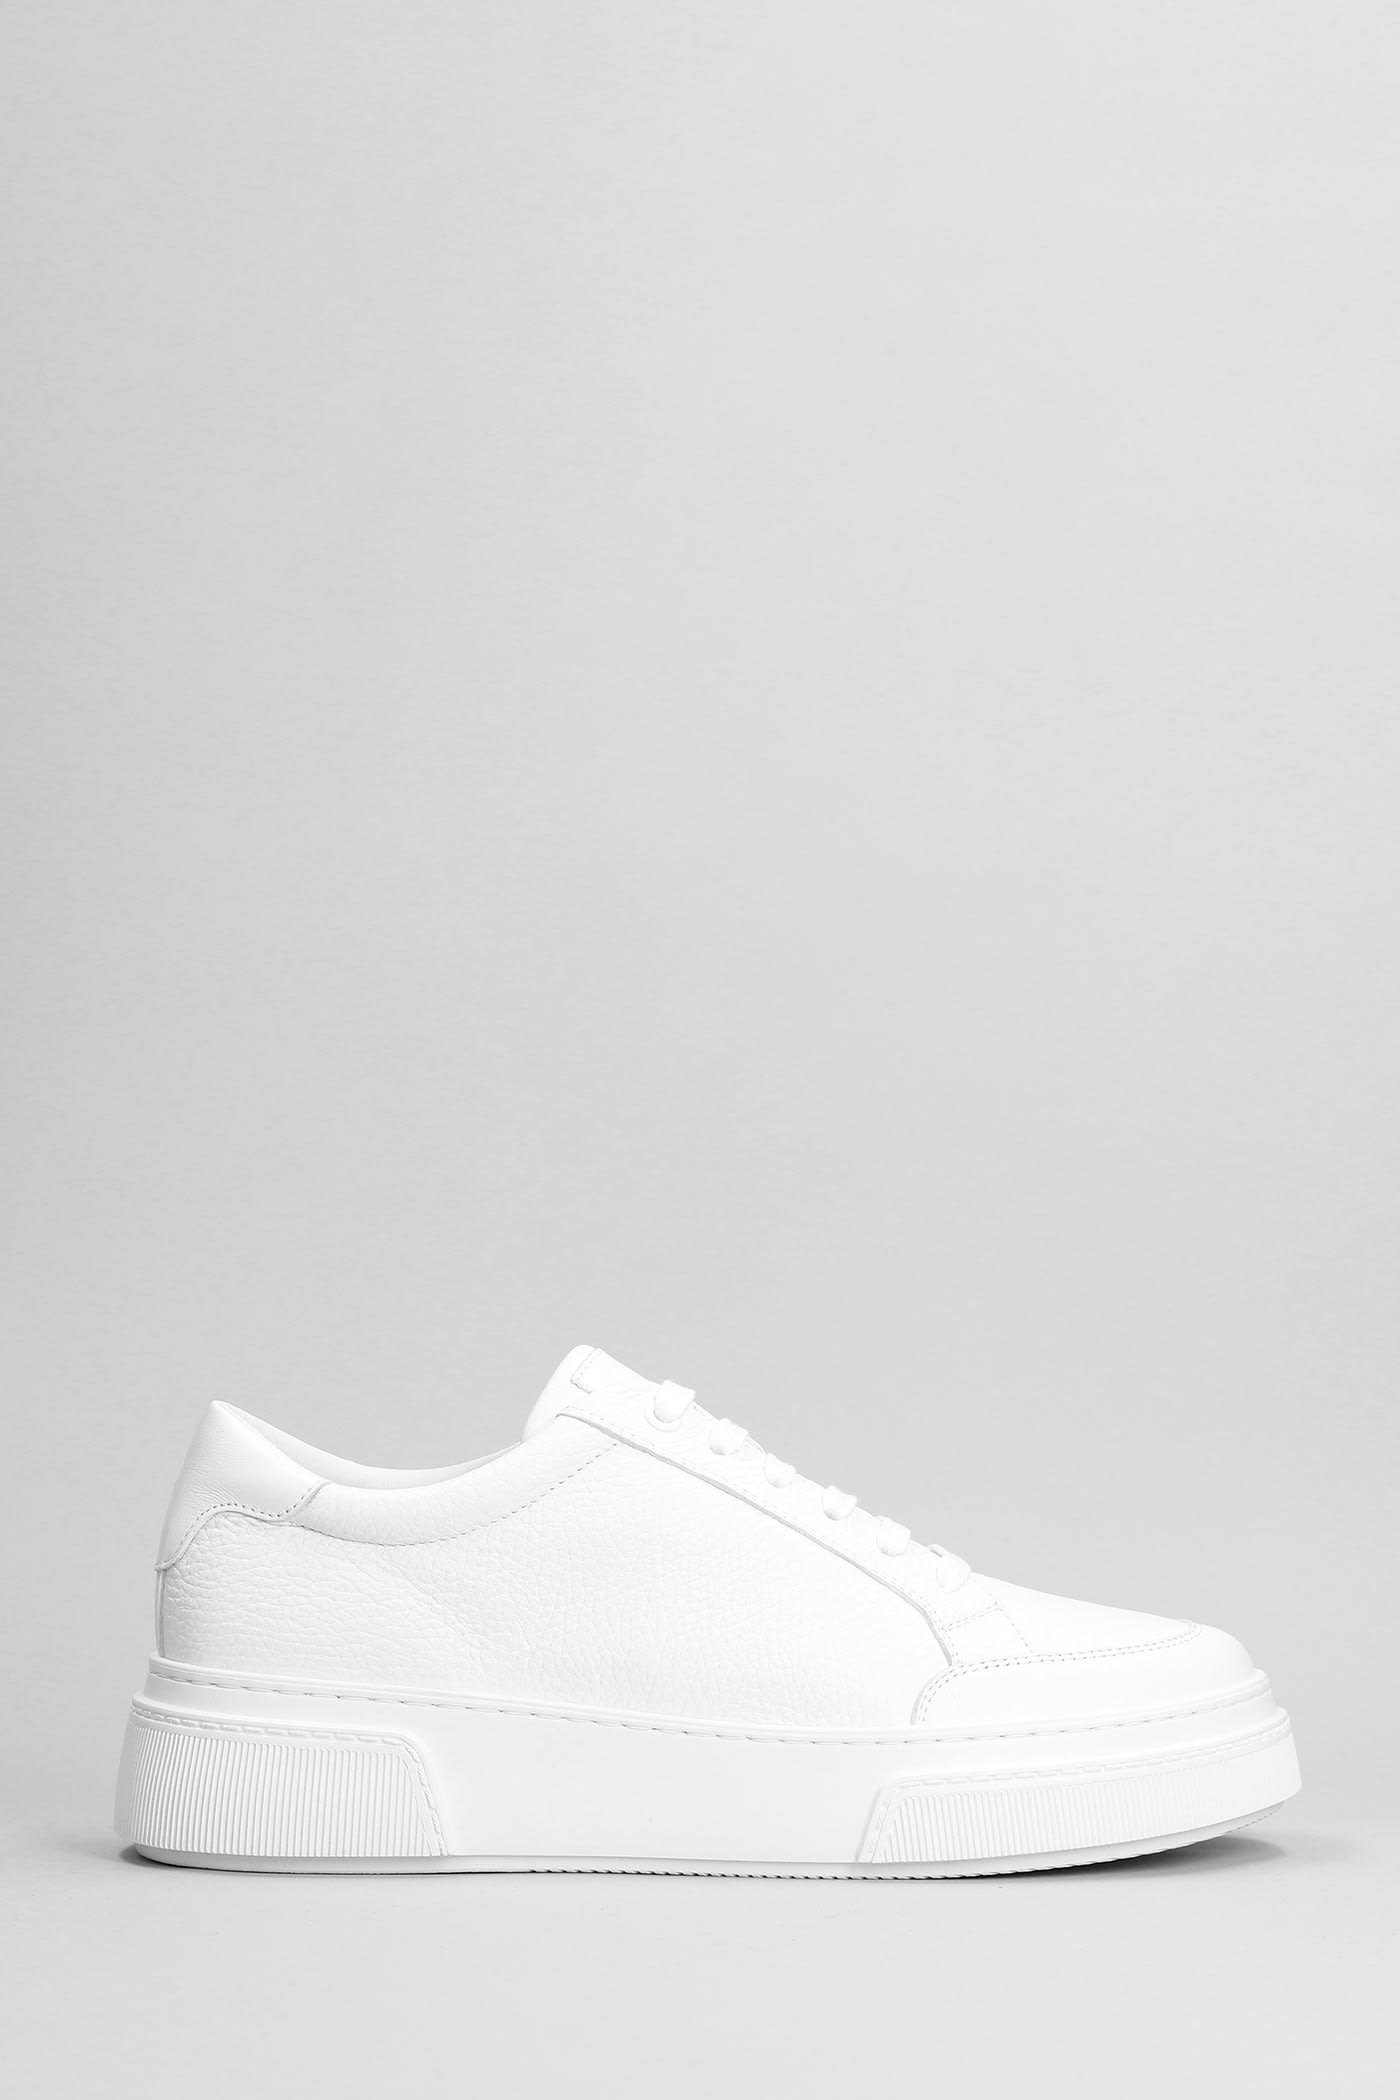 Giorgio Armani Sneakers In White Leather